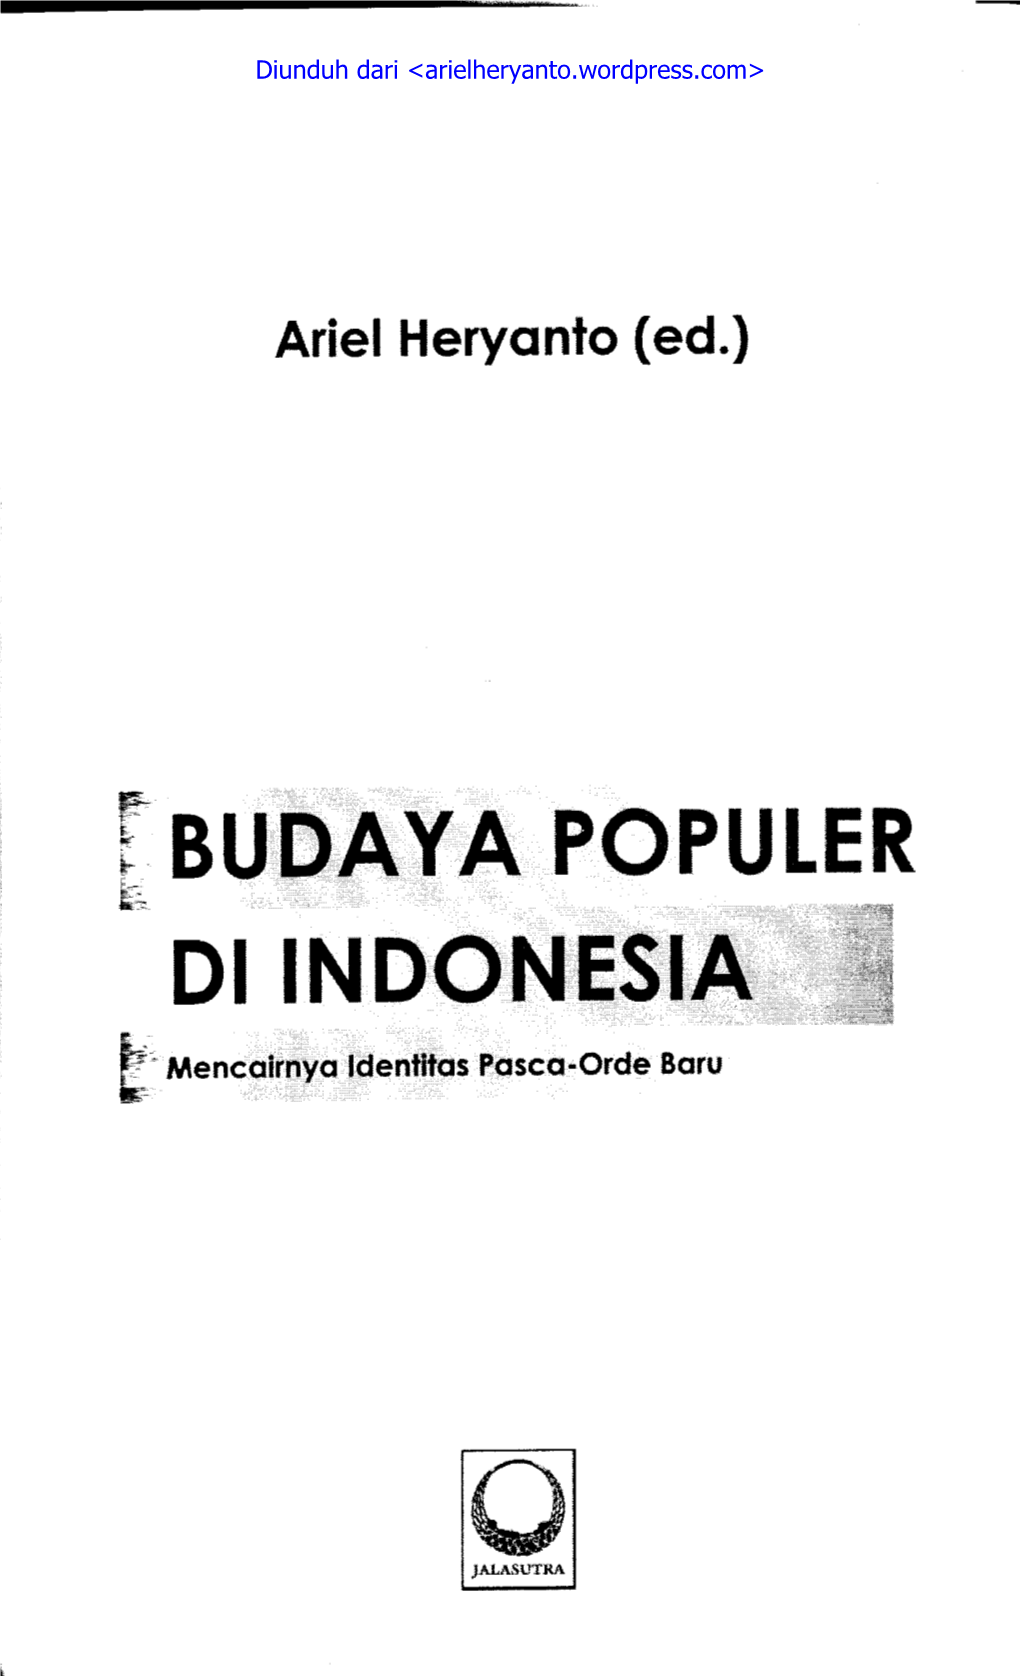 Budaya Populer Di Indonesia Mencairnya Identitas Pasca-Orde Baru Ariel Heryanto (Ed.), 2012 12,JCS.250